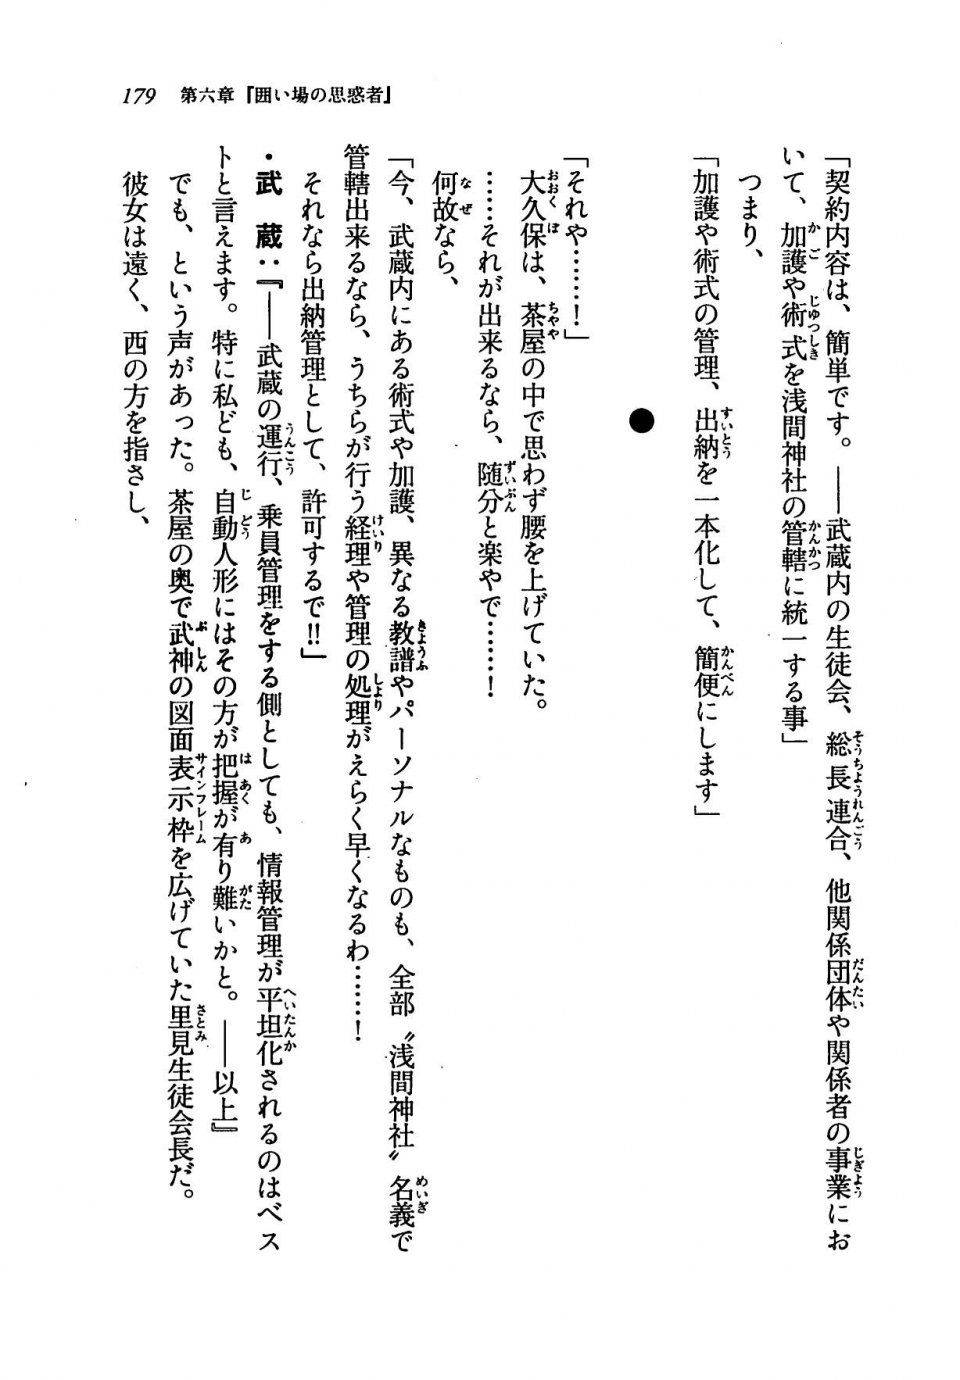 Kyoukai Senjou no Horizon LN Vol 19(8A) - Photo #179